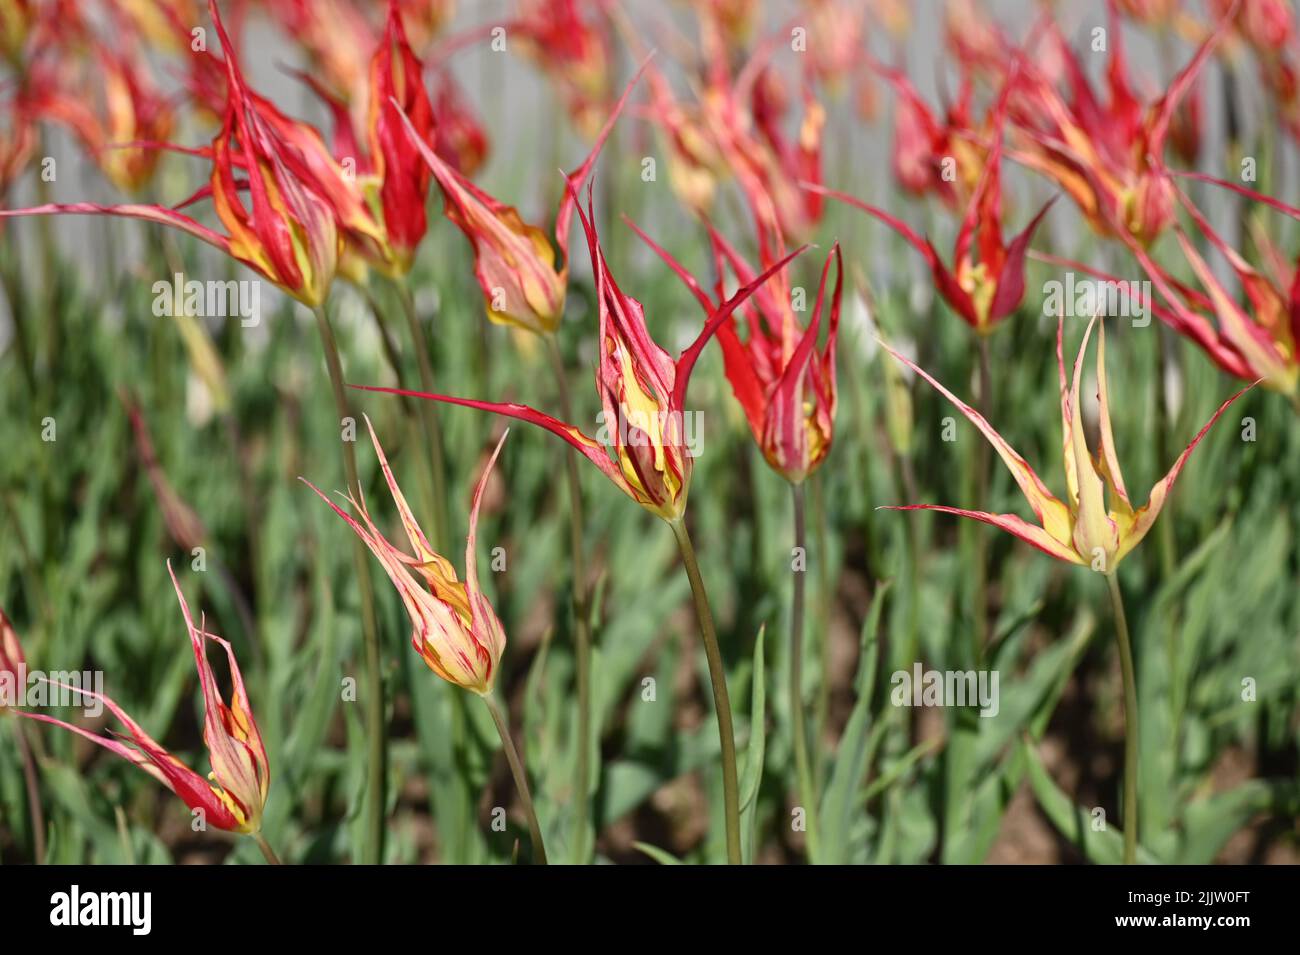 La flamme du feu ou la tulipe turque remonte au moins au début de 1800s. Tulips de couleur rouge incroyable. Banque D'Images